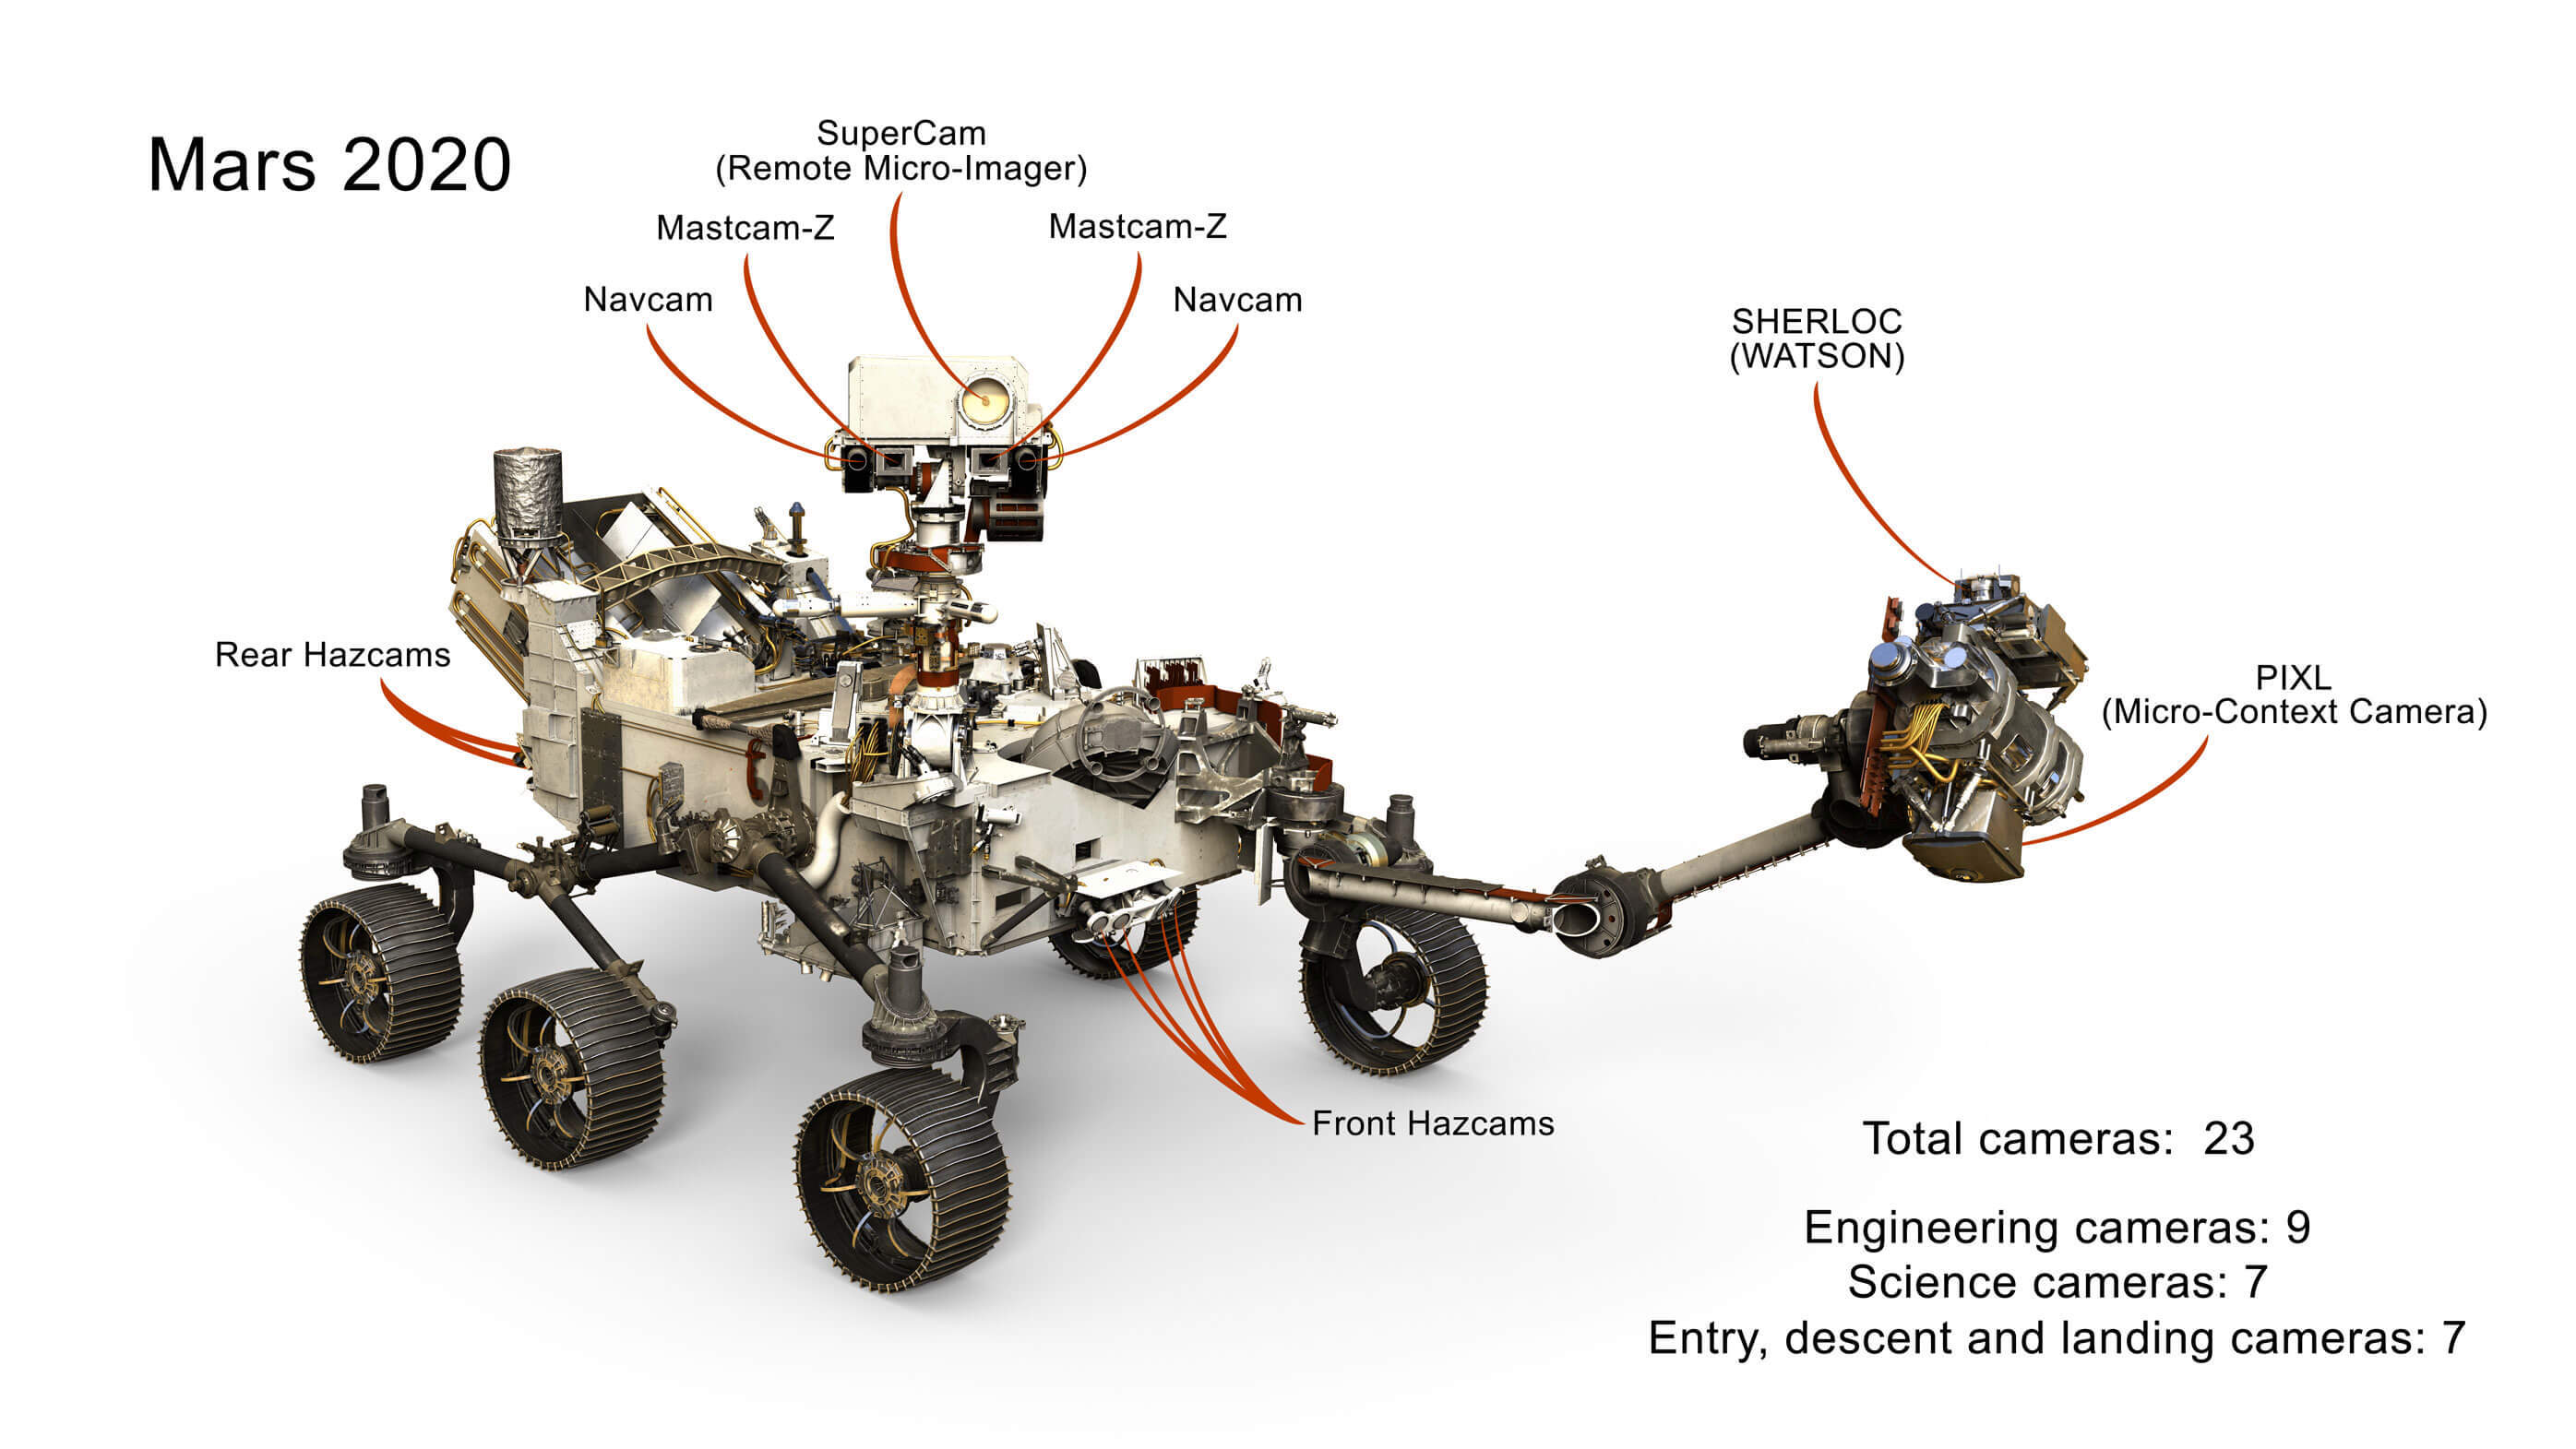 合計23のイメージングシステムにより、火星探査機パーサヴィアランスは安全に走行し、火星の表面から地質サンプルを収集することができる。